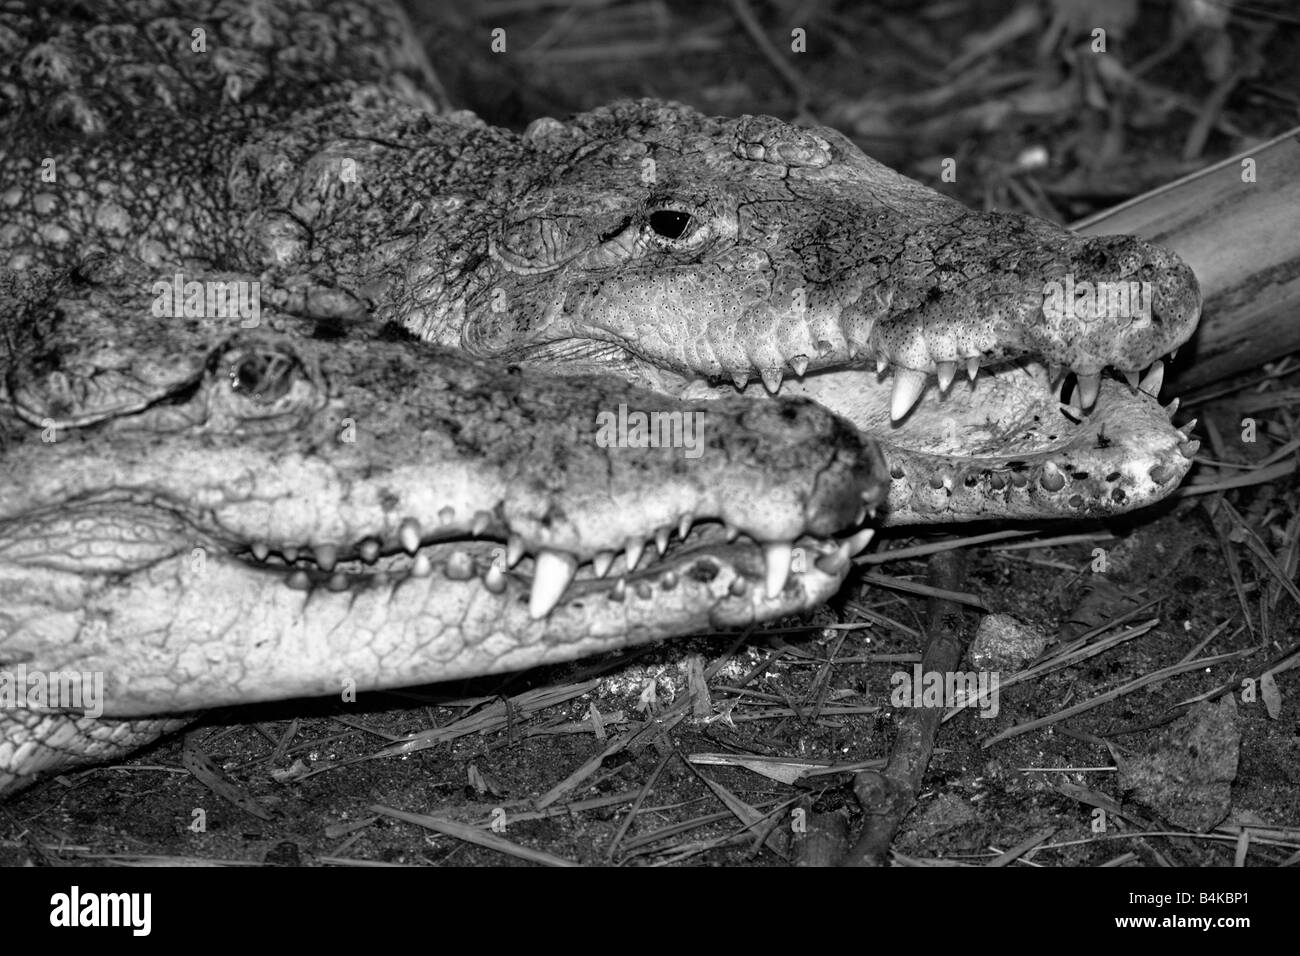 Krokodile mit ihren üblichen Zahn Grinsen wie visage Stockfoto